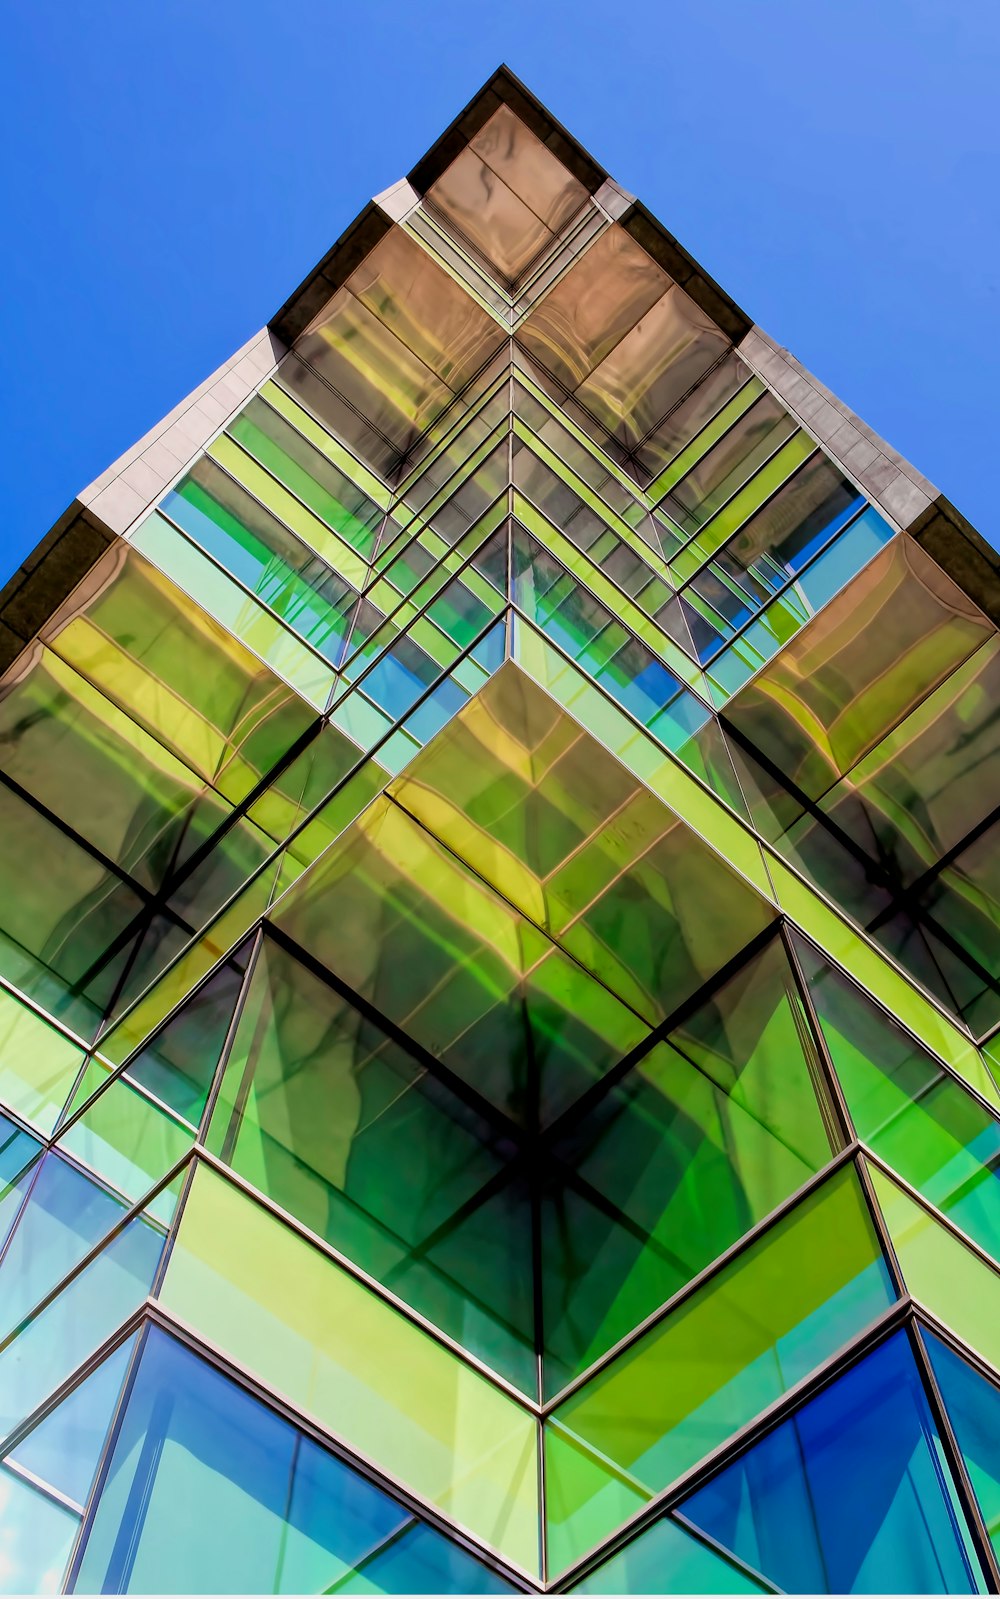 Architekturfotografie von grünen und blauen Glasgebäuden